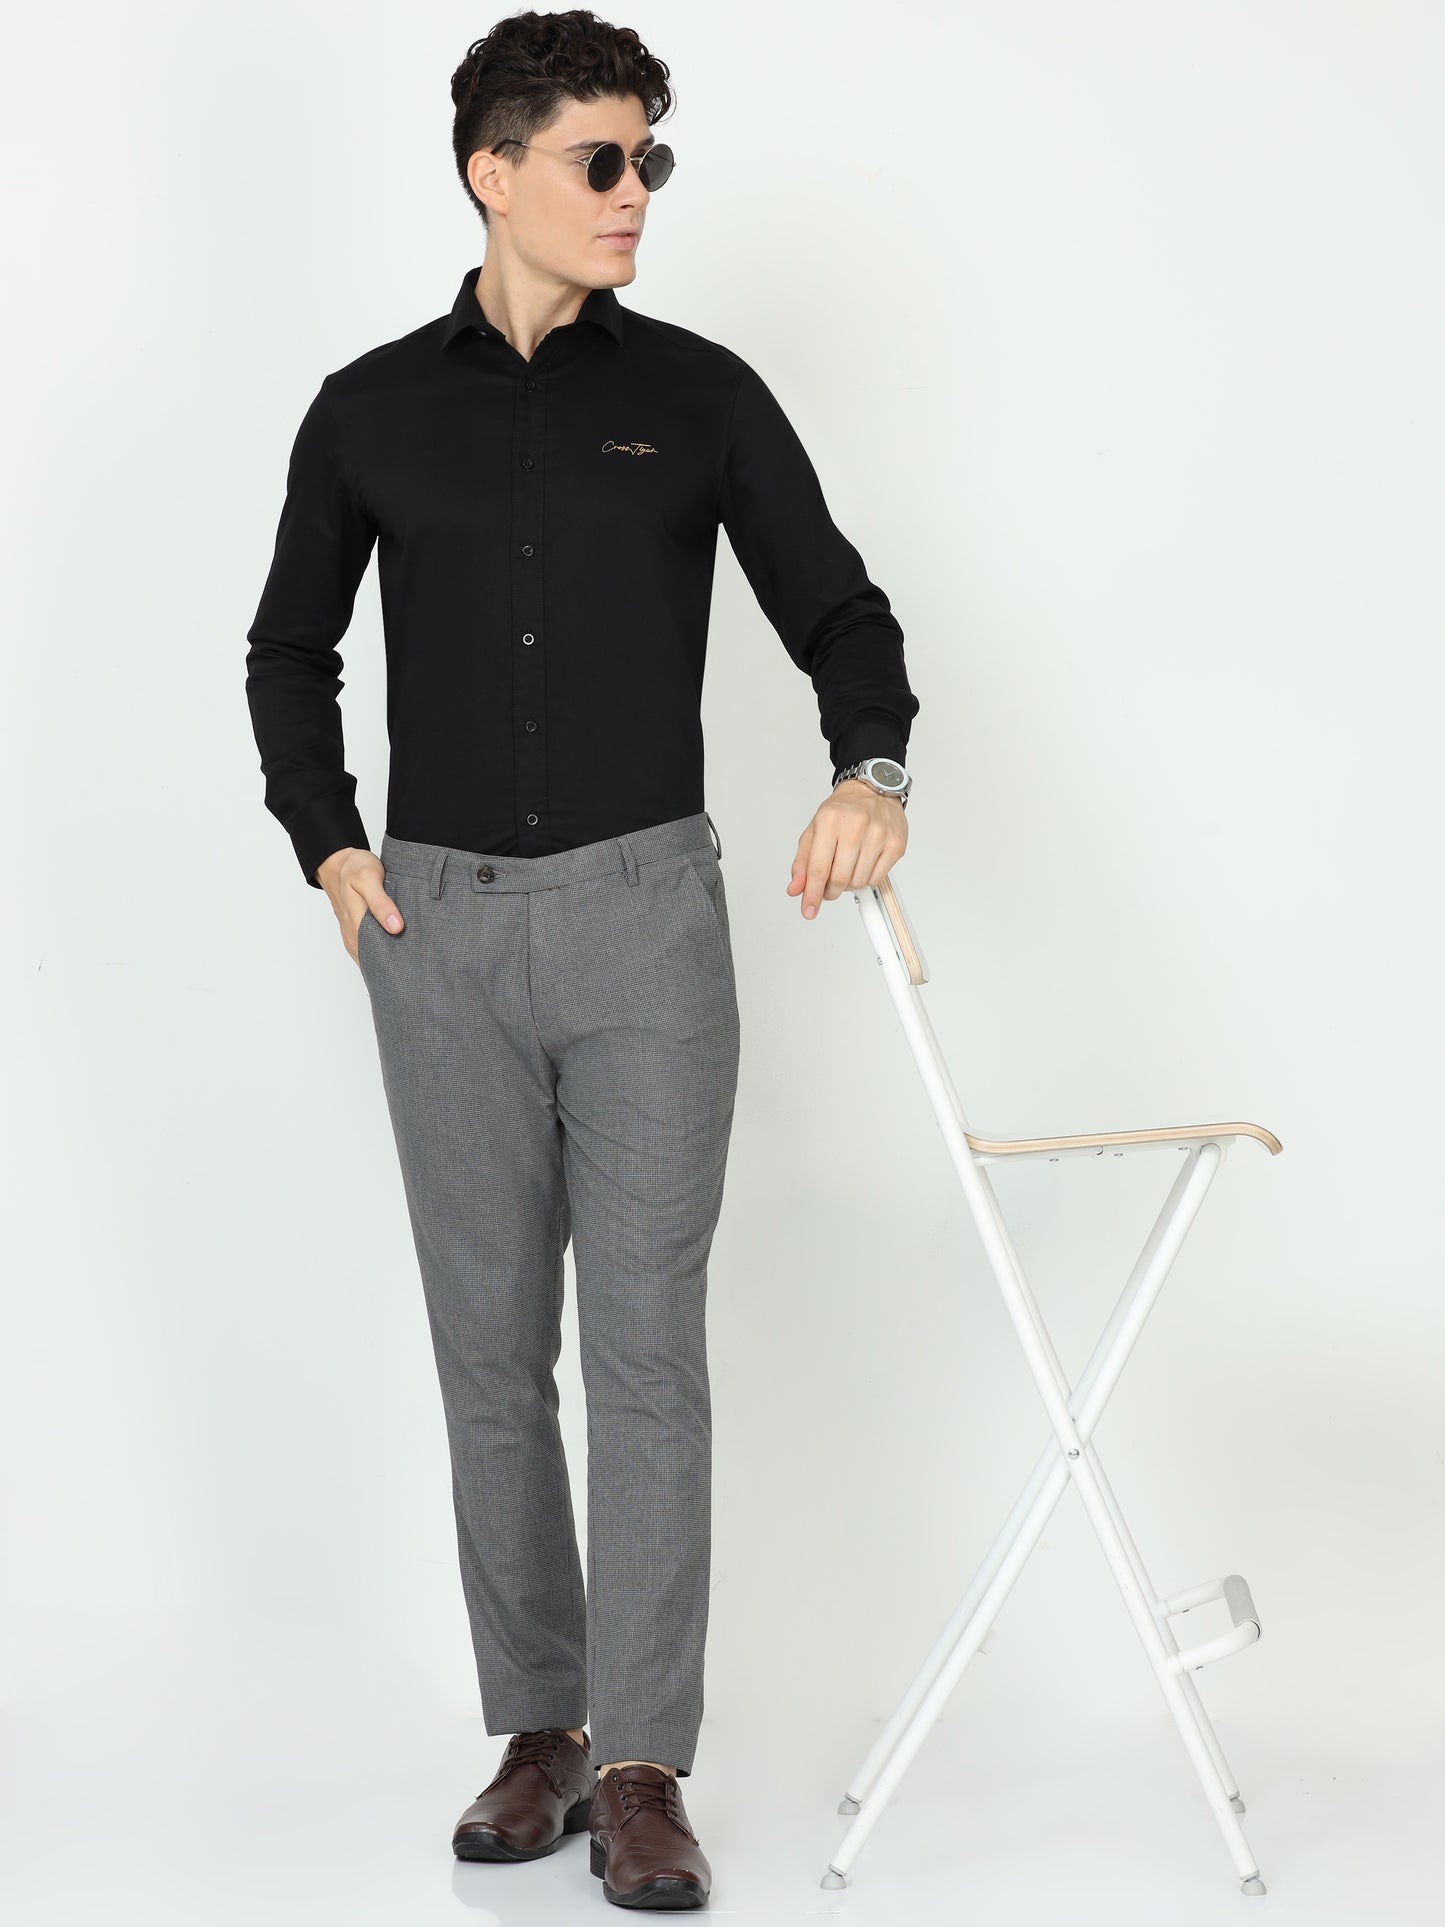 Grey Mens Formal Trouser